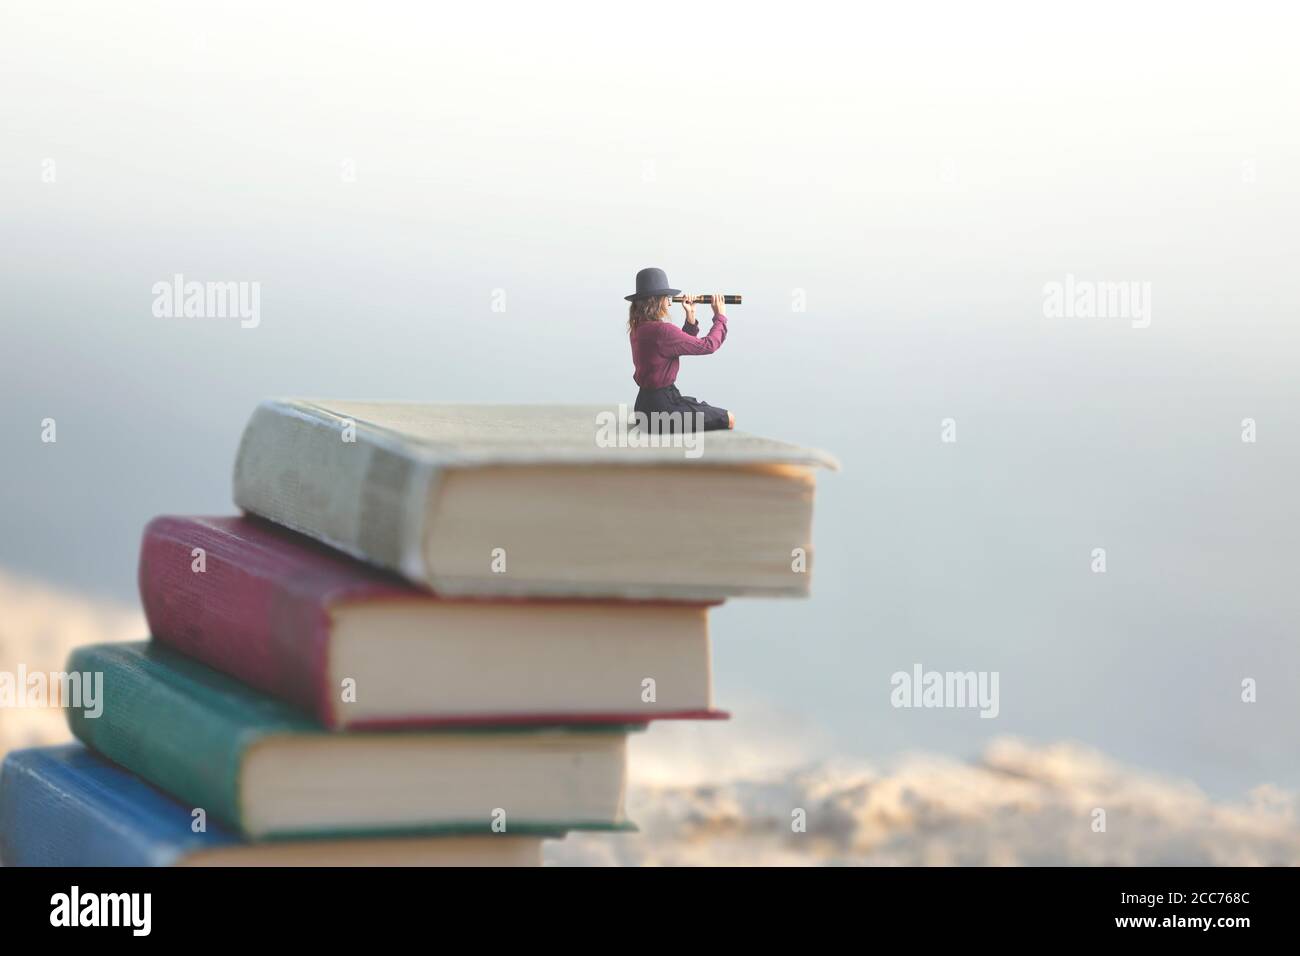 la femme miniature regarde l'infini avec le spyglass une échelle de livres Banque D'Images